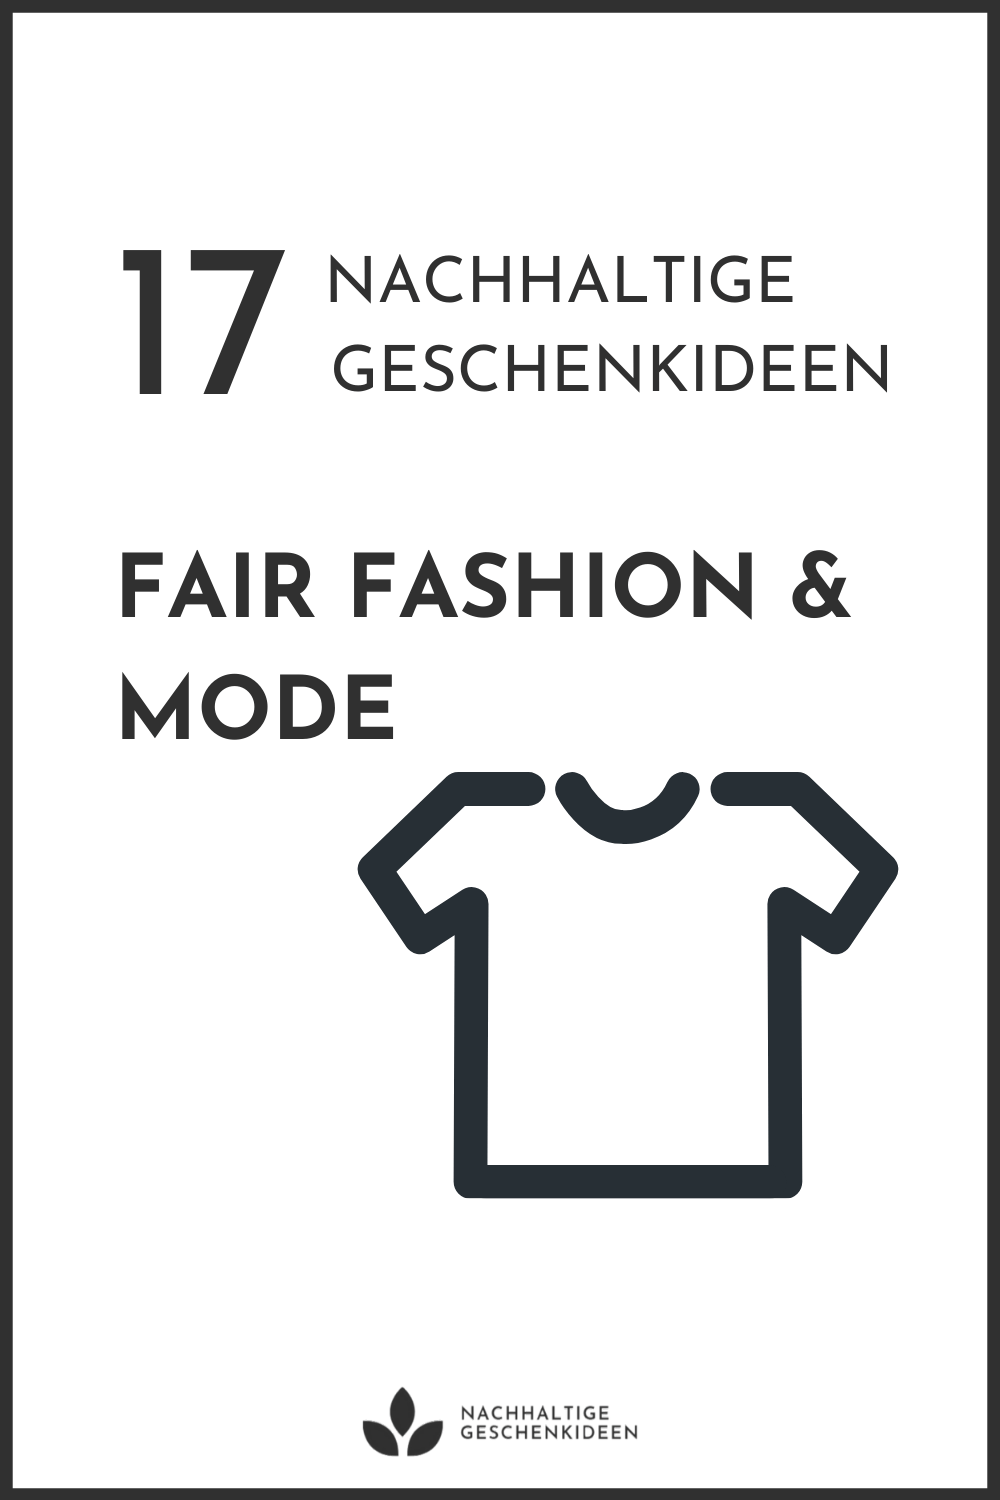 Nachhaltige Geschenkideen - nachhaltige Mode und Fair Fashion